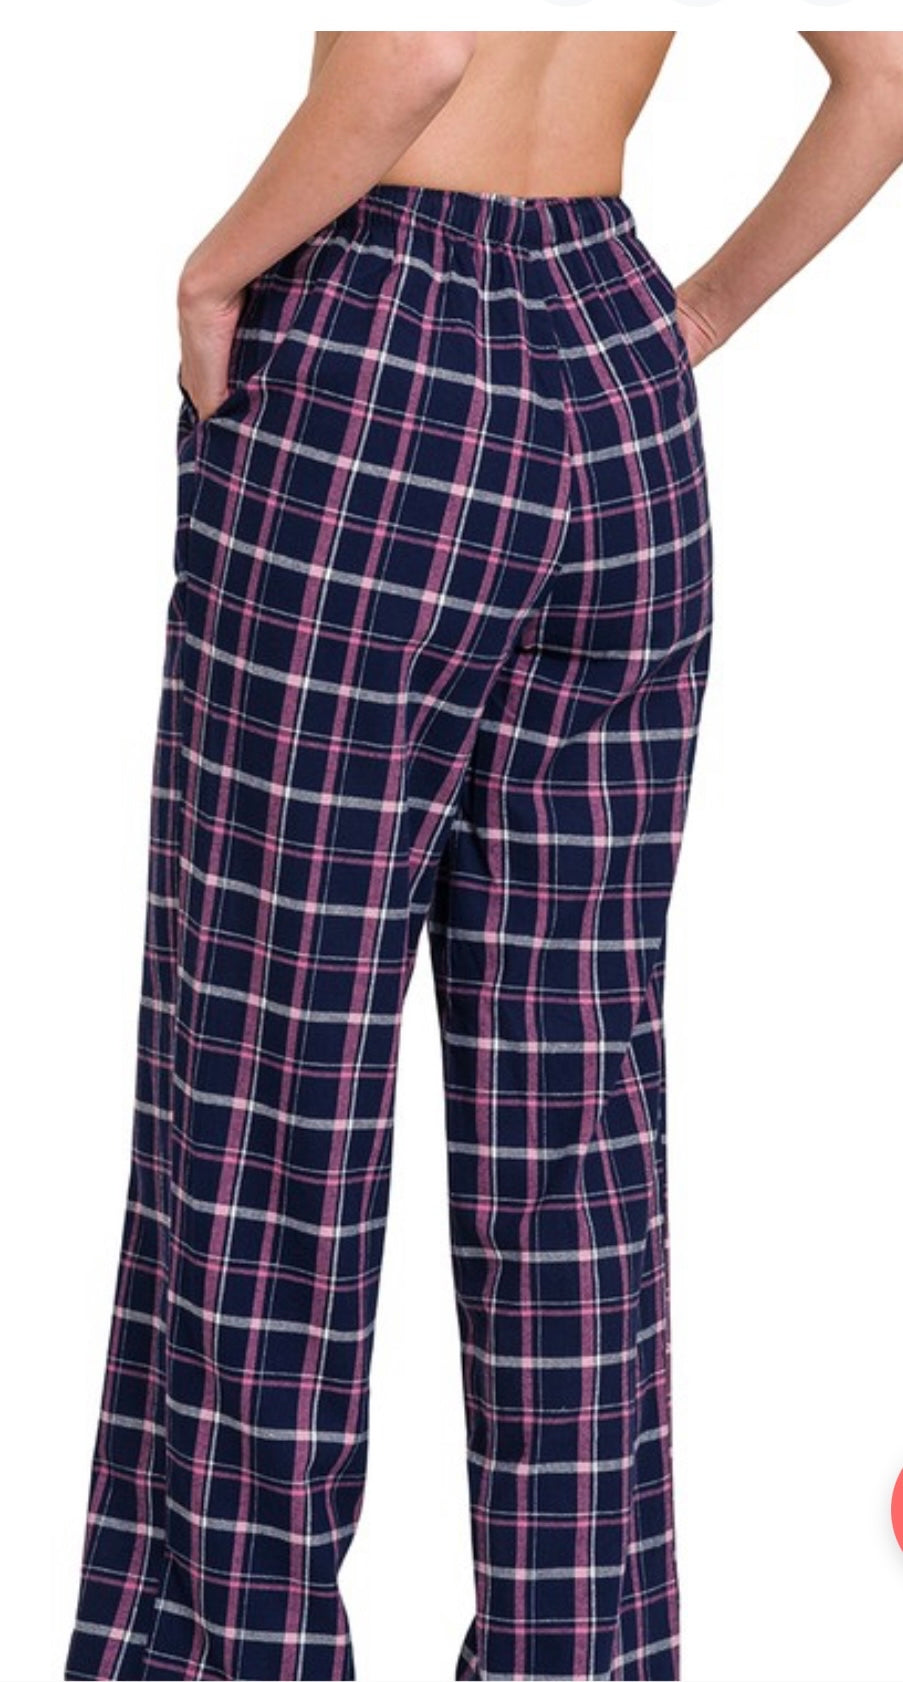 Plaid Lounge pants/ pj pants with pockets